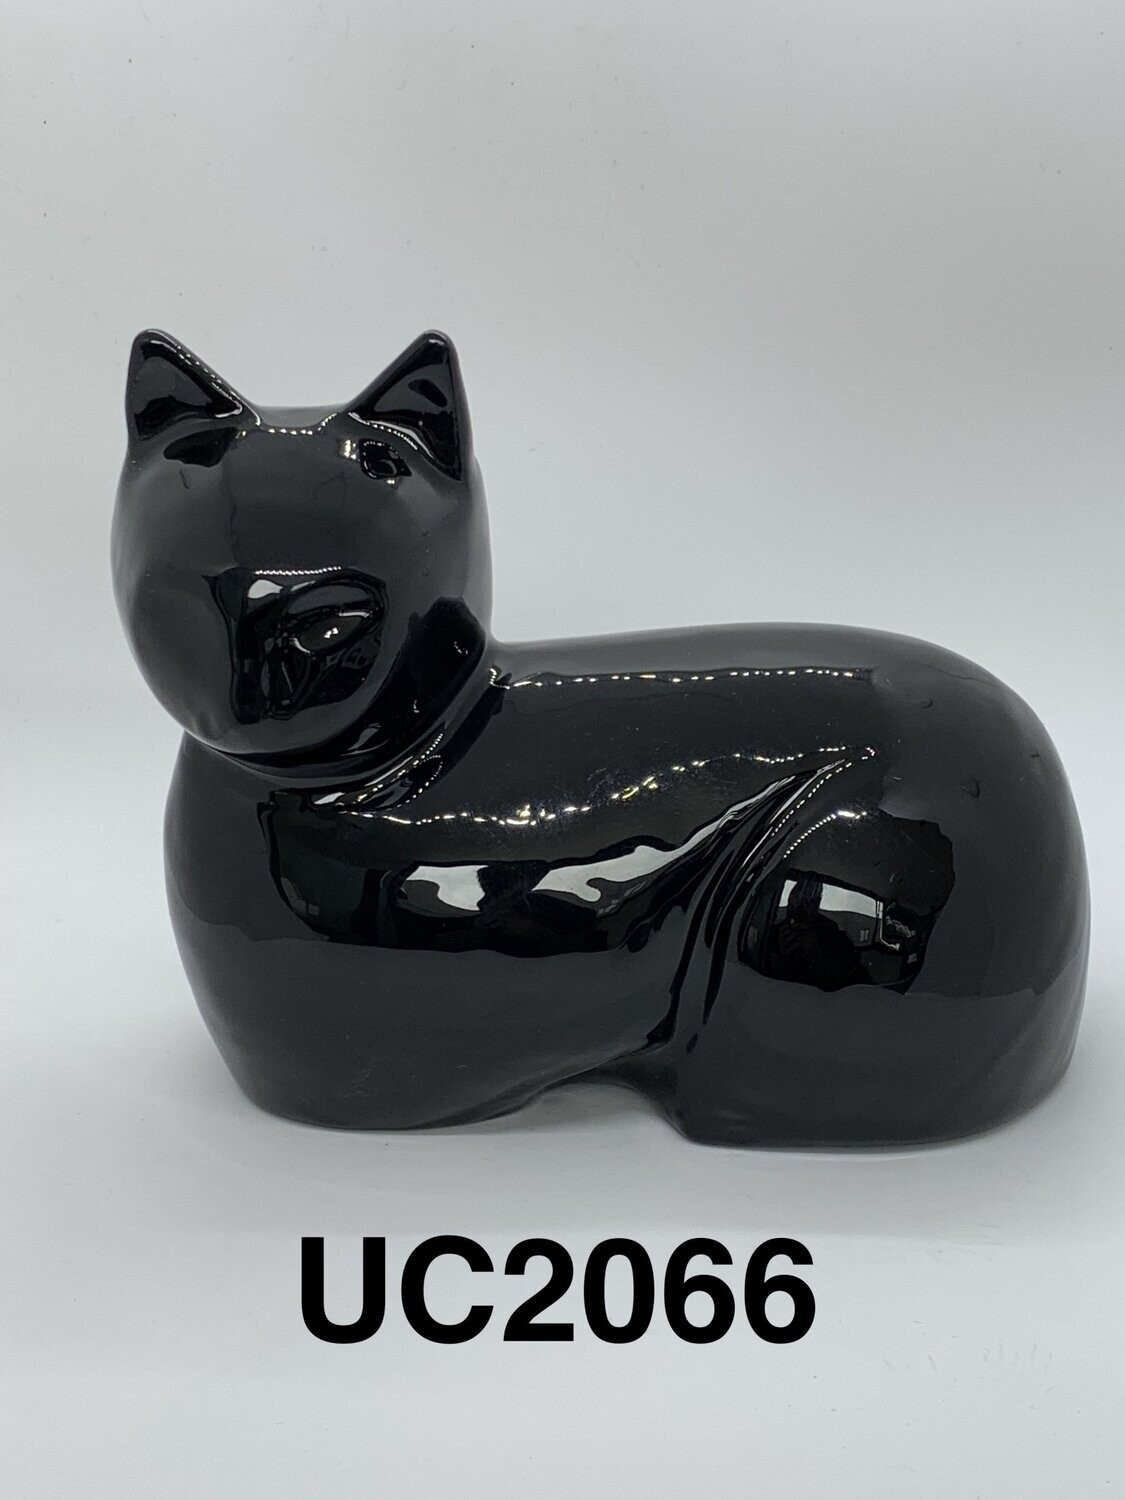 UC2066